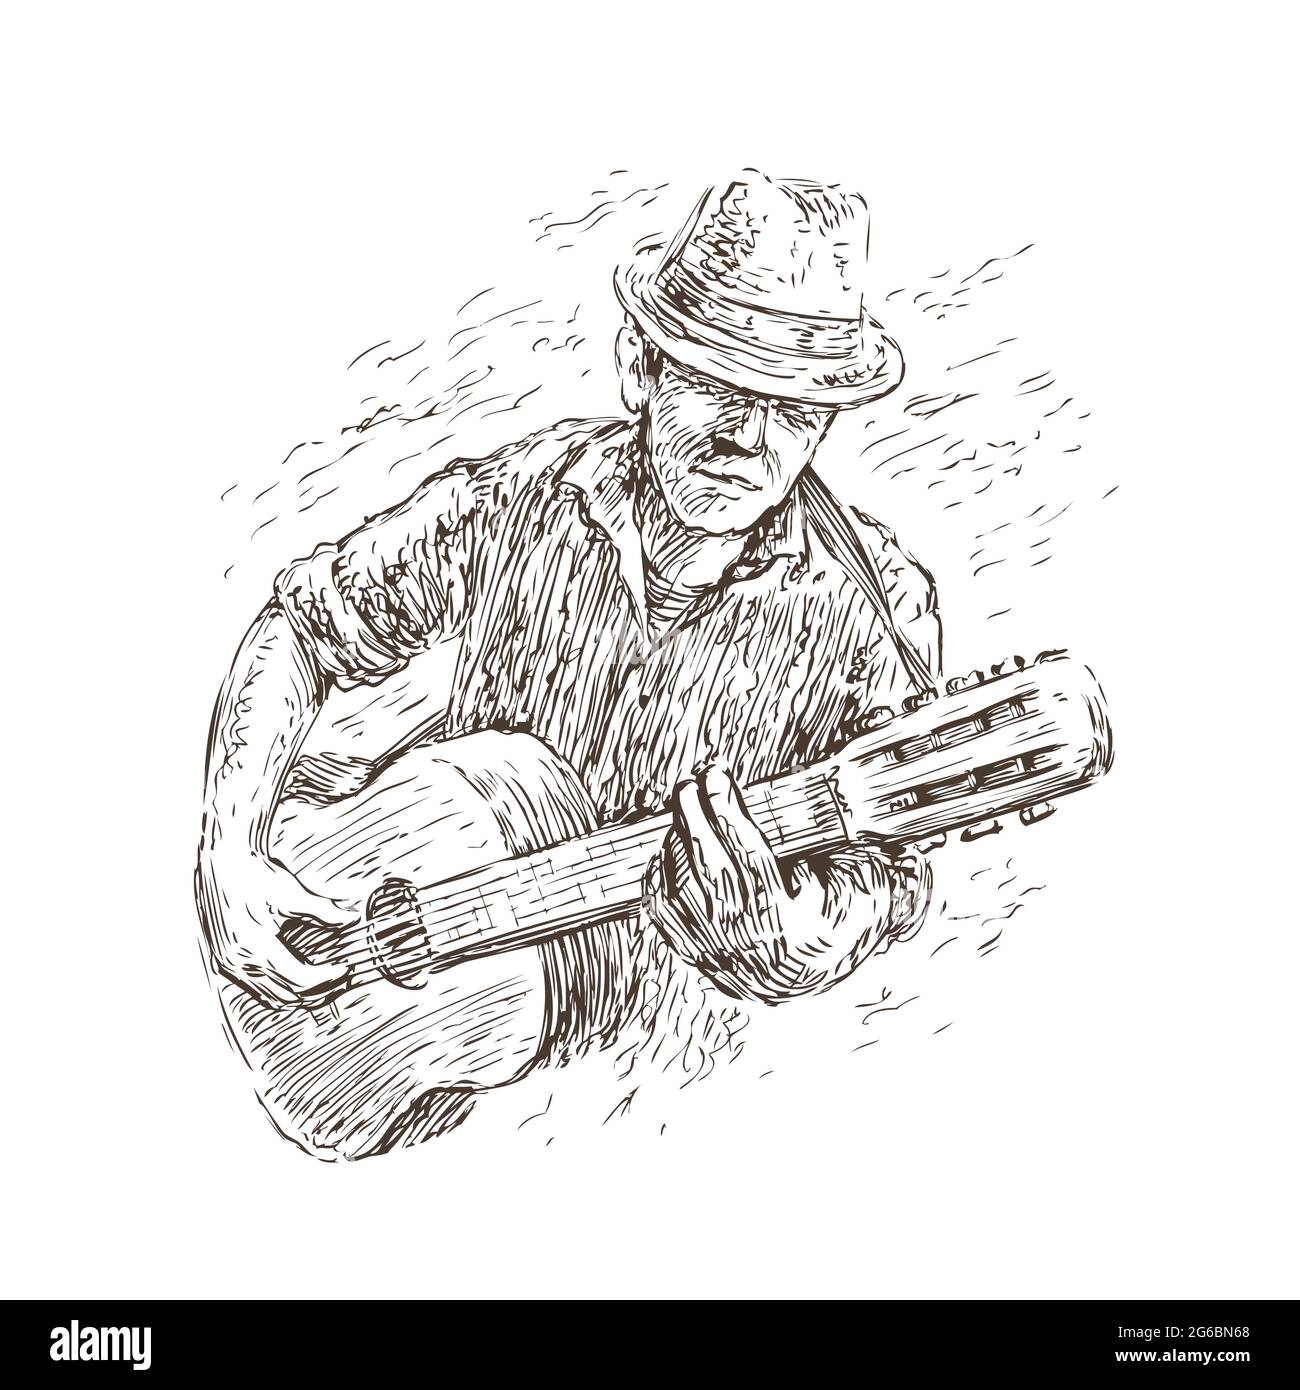 Homme jouant de la guitare. Musique live, festival de jazz concept dans un style vintage de dessin Illustration de Vecteur